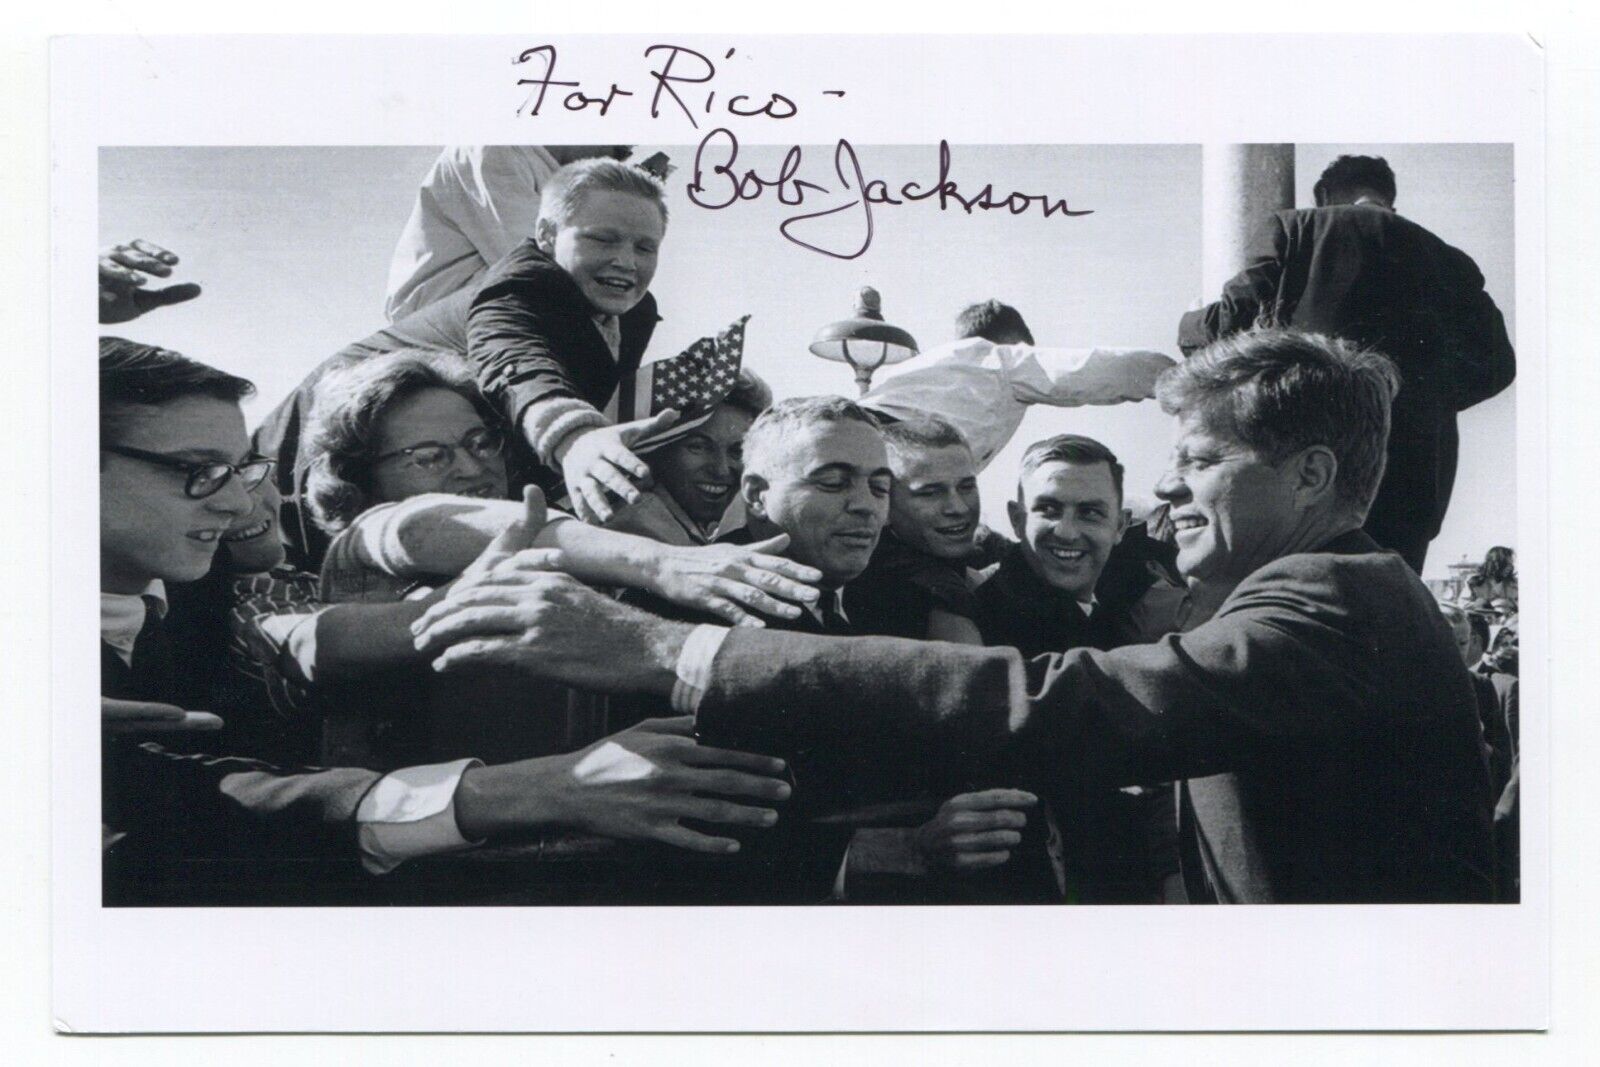 Bob Jackson Signed Photo Autographed Lee Harvey Oswald Jack Ruby Photo JFK